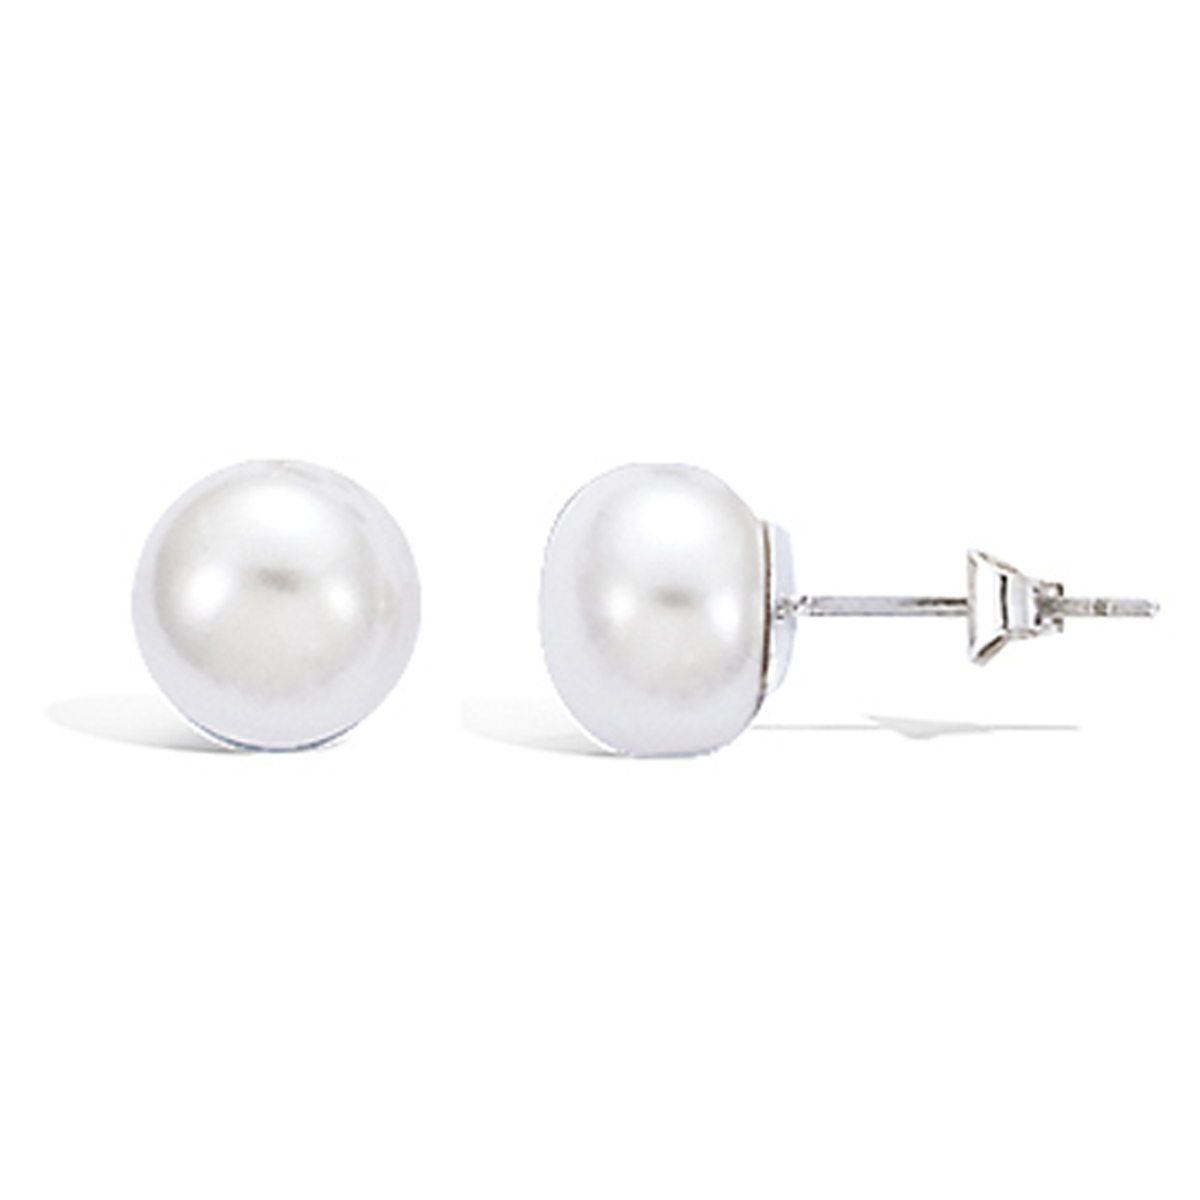 Boucles argent \'Perla\' blanc ivoire (plate) argenté (rhodié) - 10 mm - [H0471]